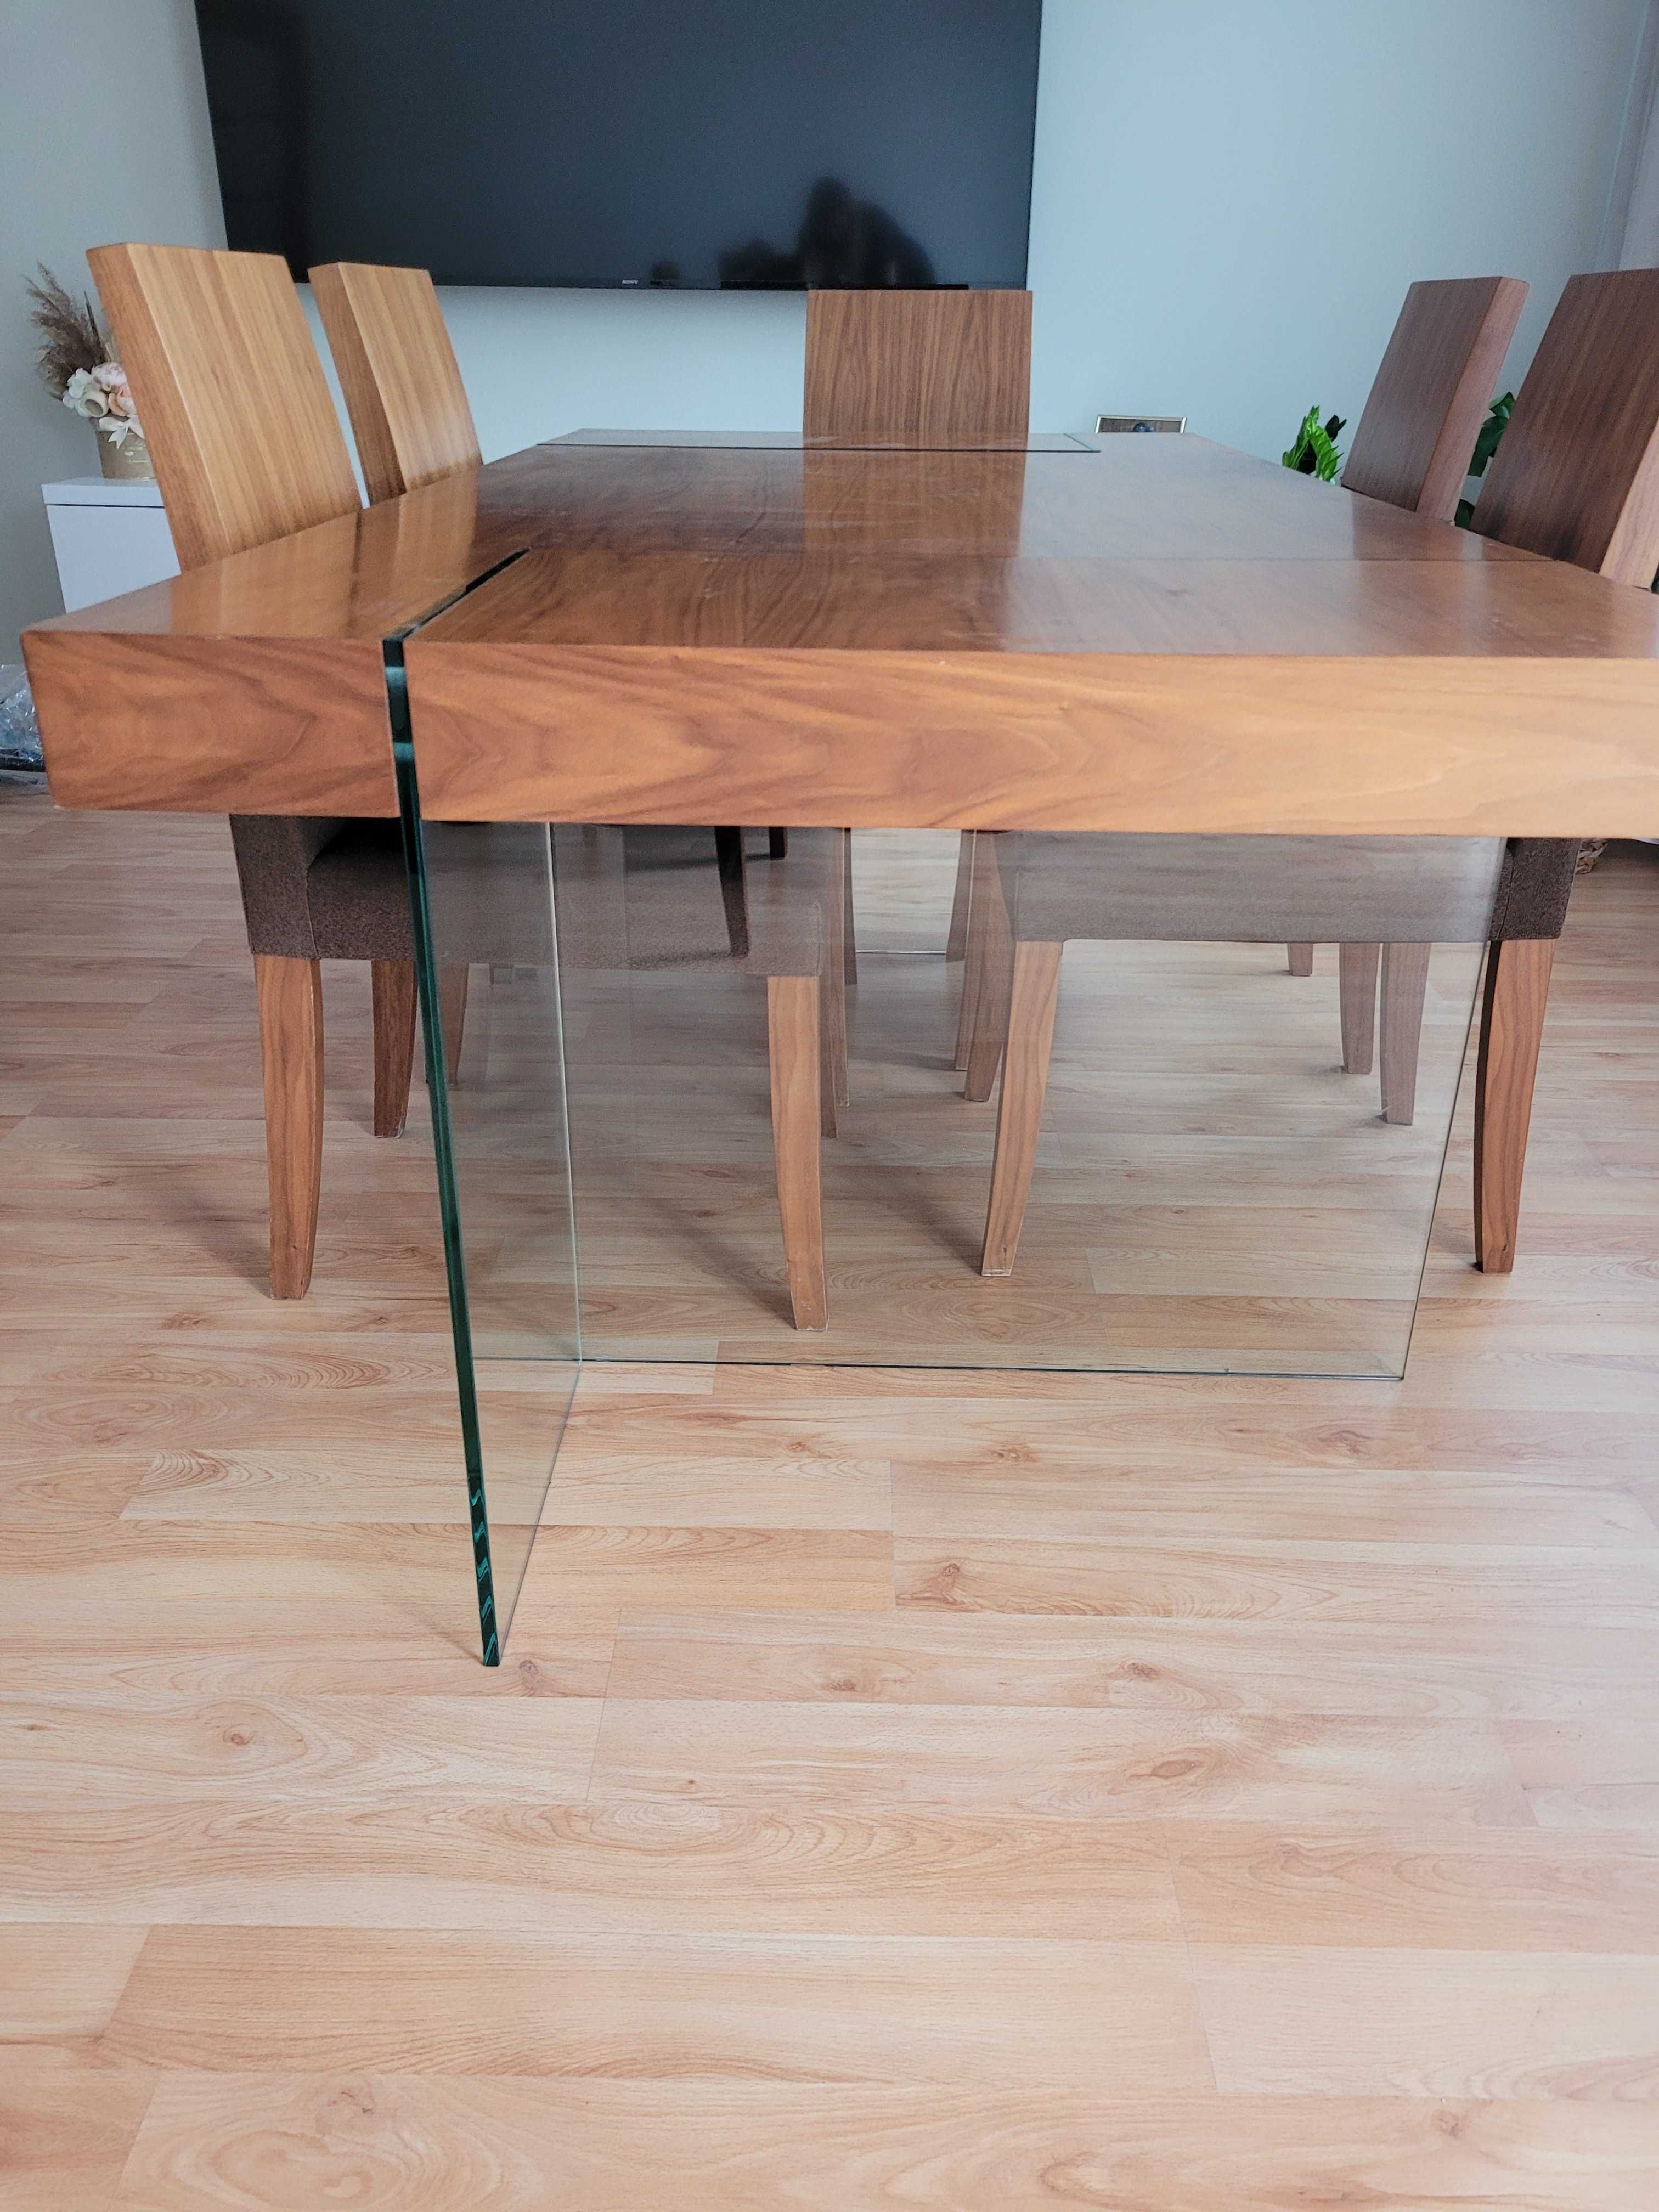 Stół do salonu jadalni duży solidny ,designerski szklane nogi  200×100